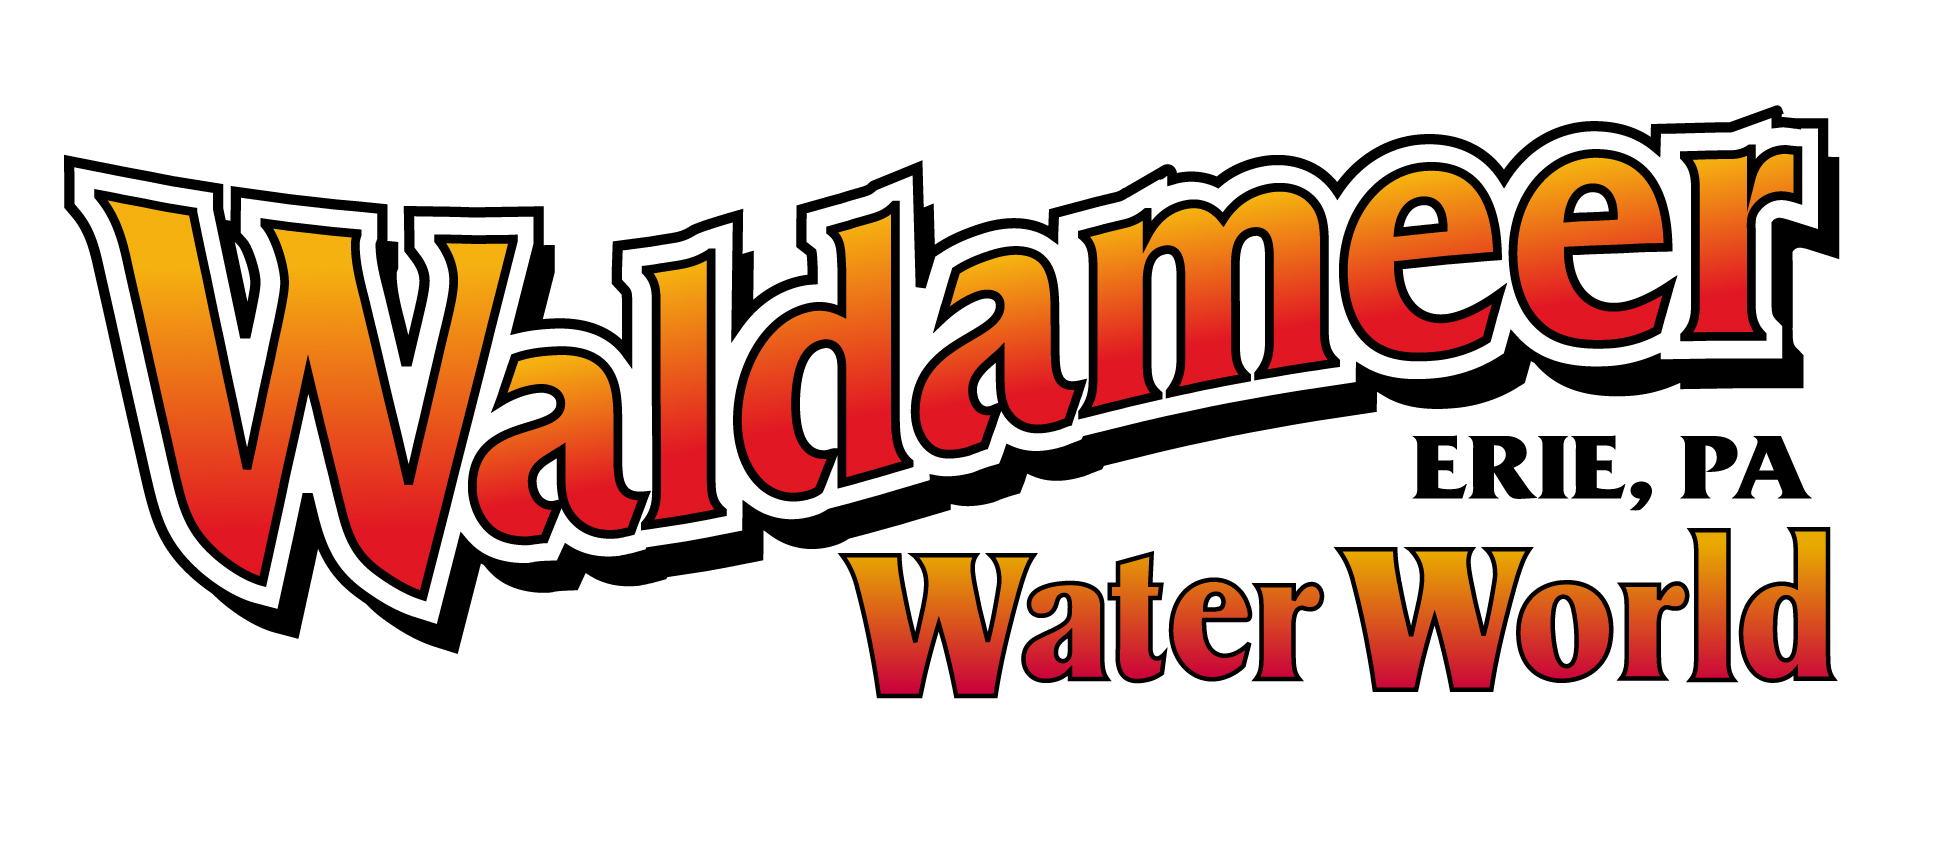 Waldameer Park & Water World - Erie, PA - wide 7